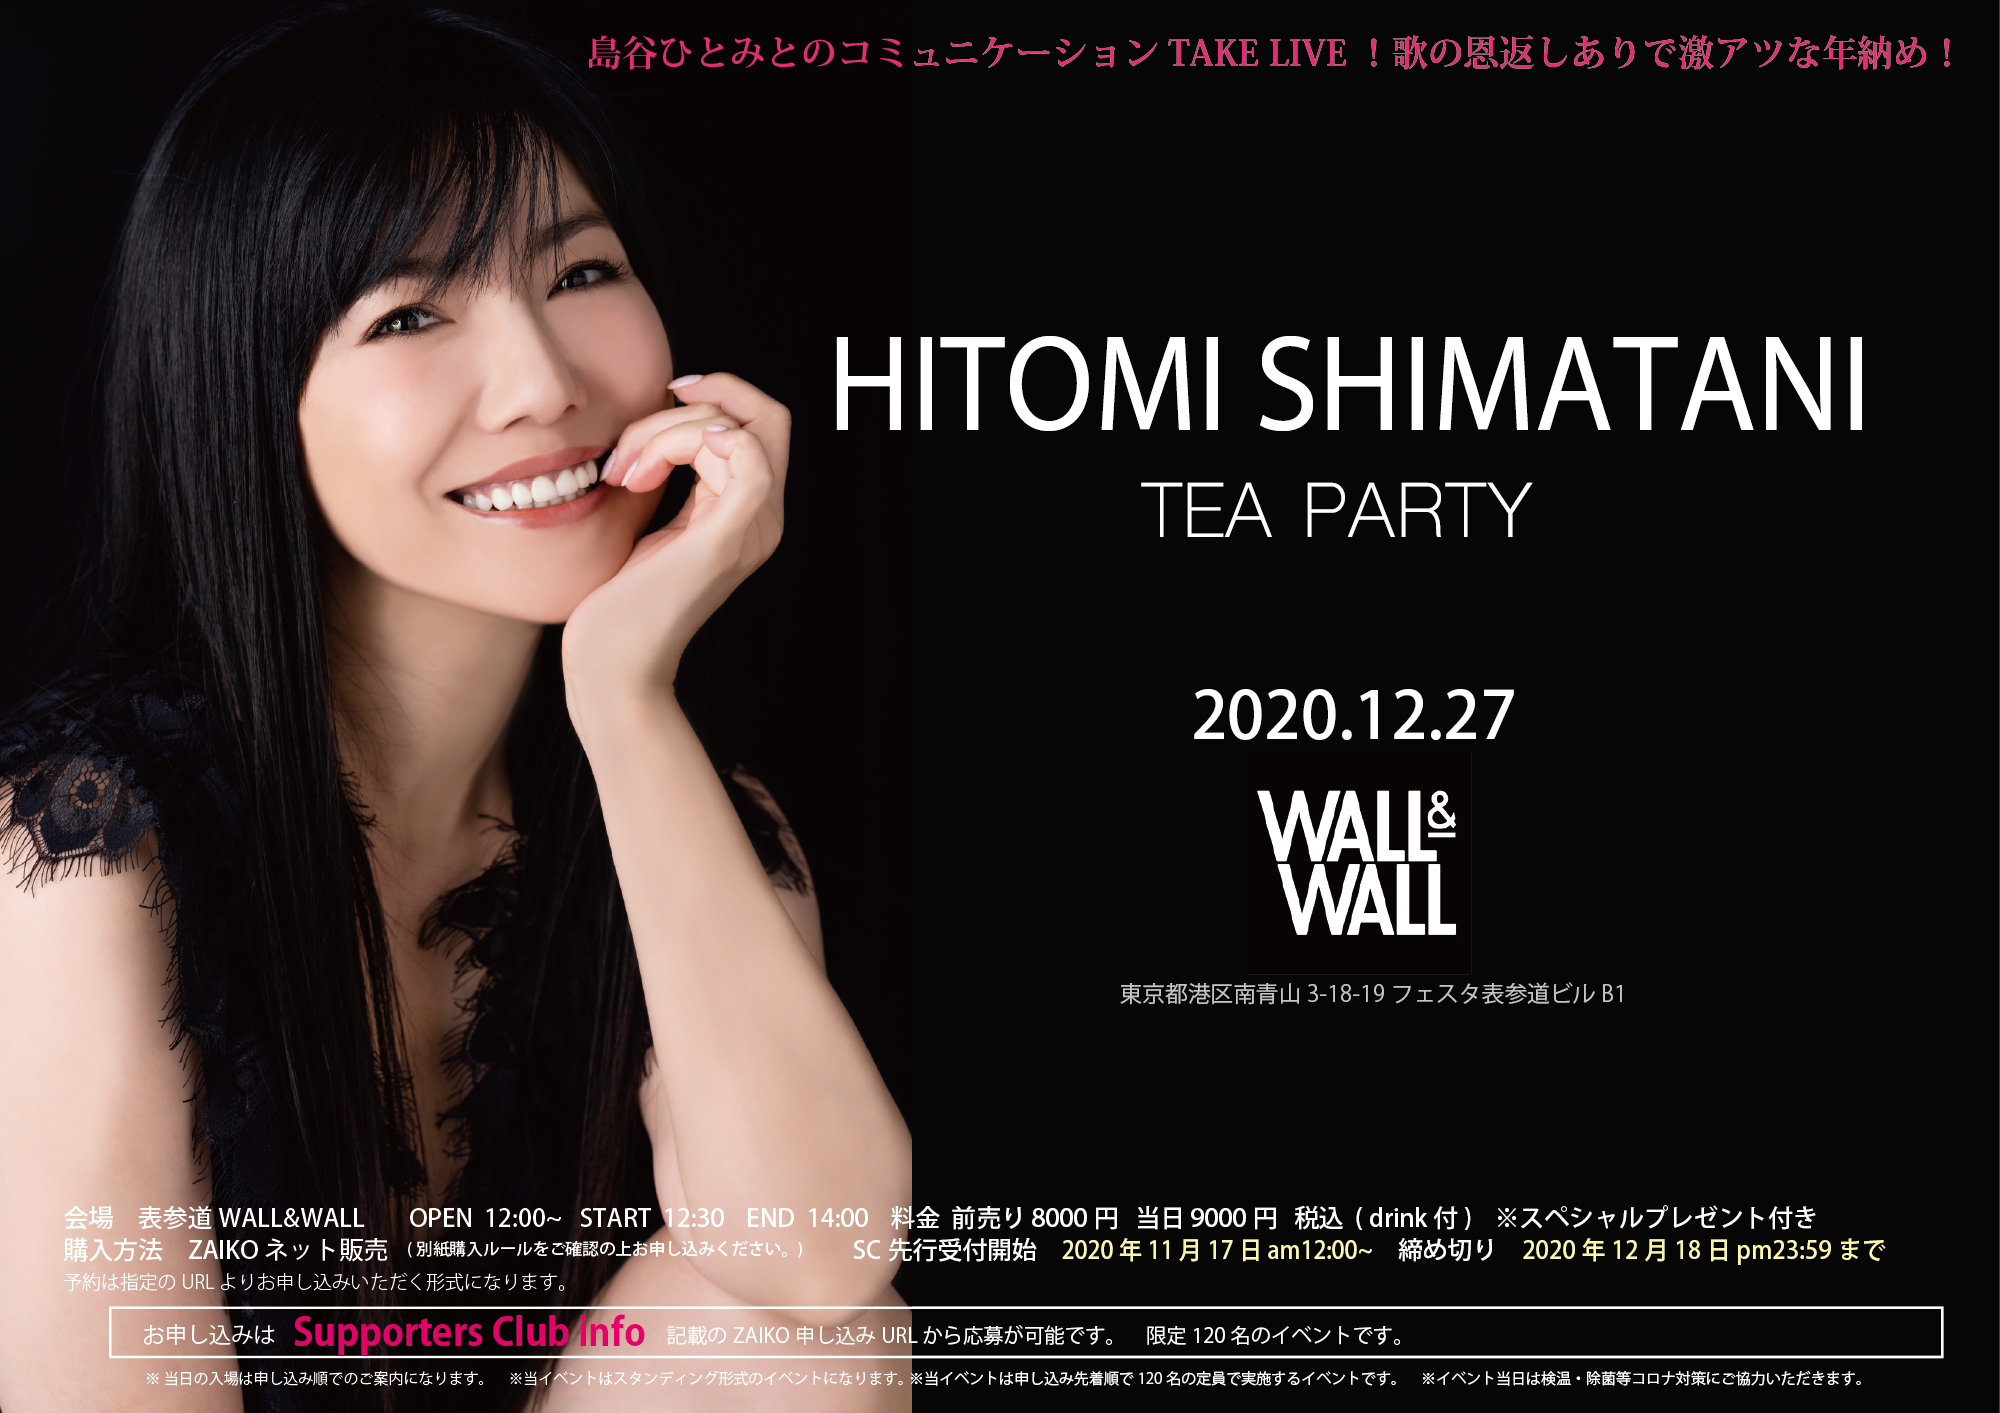 【本日12:00販売開始】HITOMI SHIMATANI TEA PARTY2020